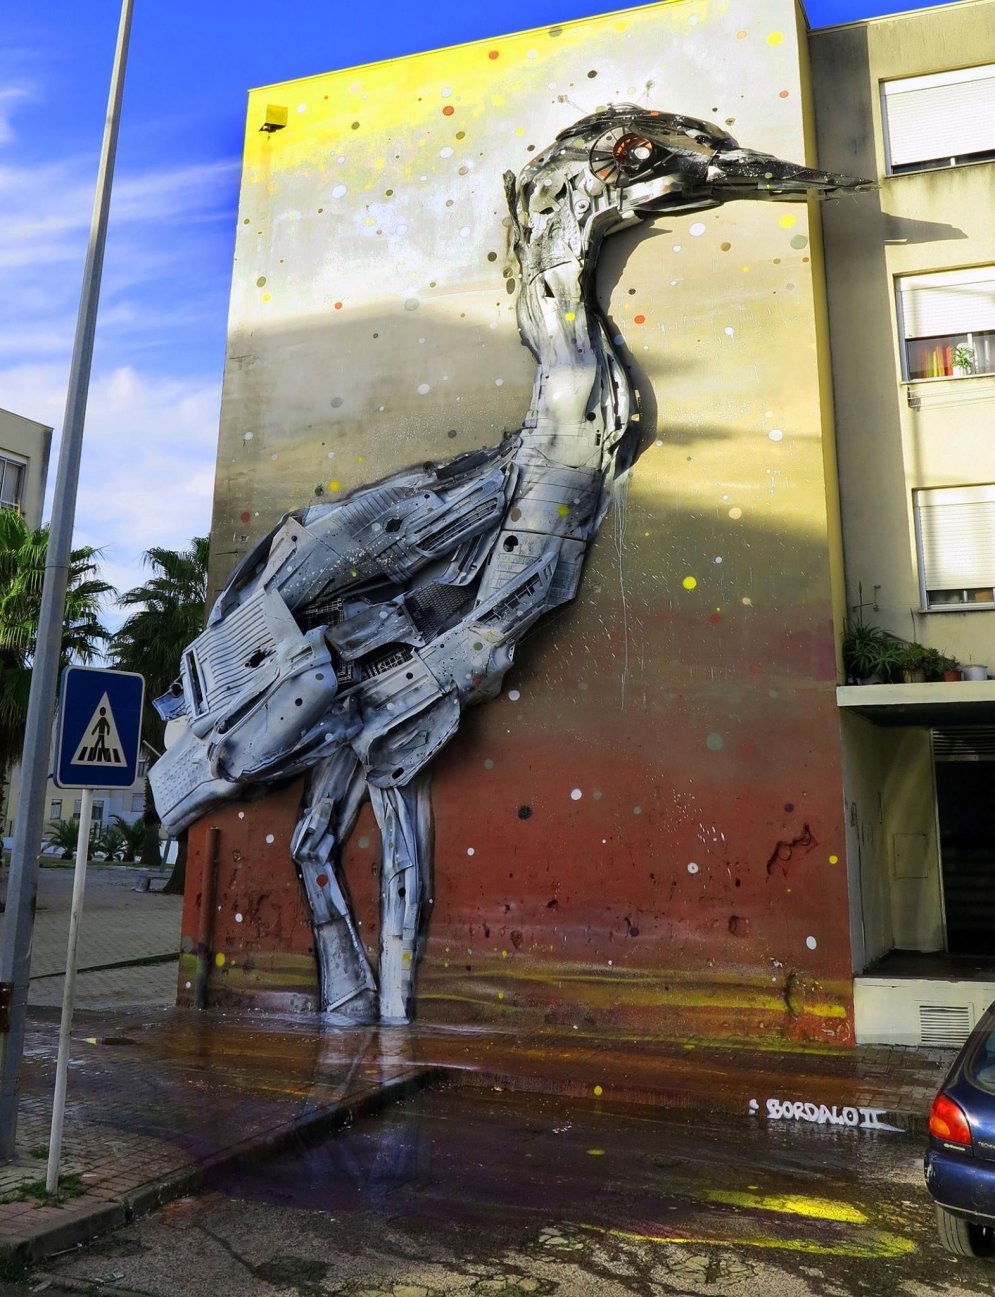 Португальский художник превращает мусор в забавные трехмерные скульптуры